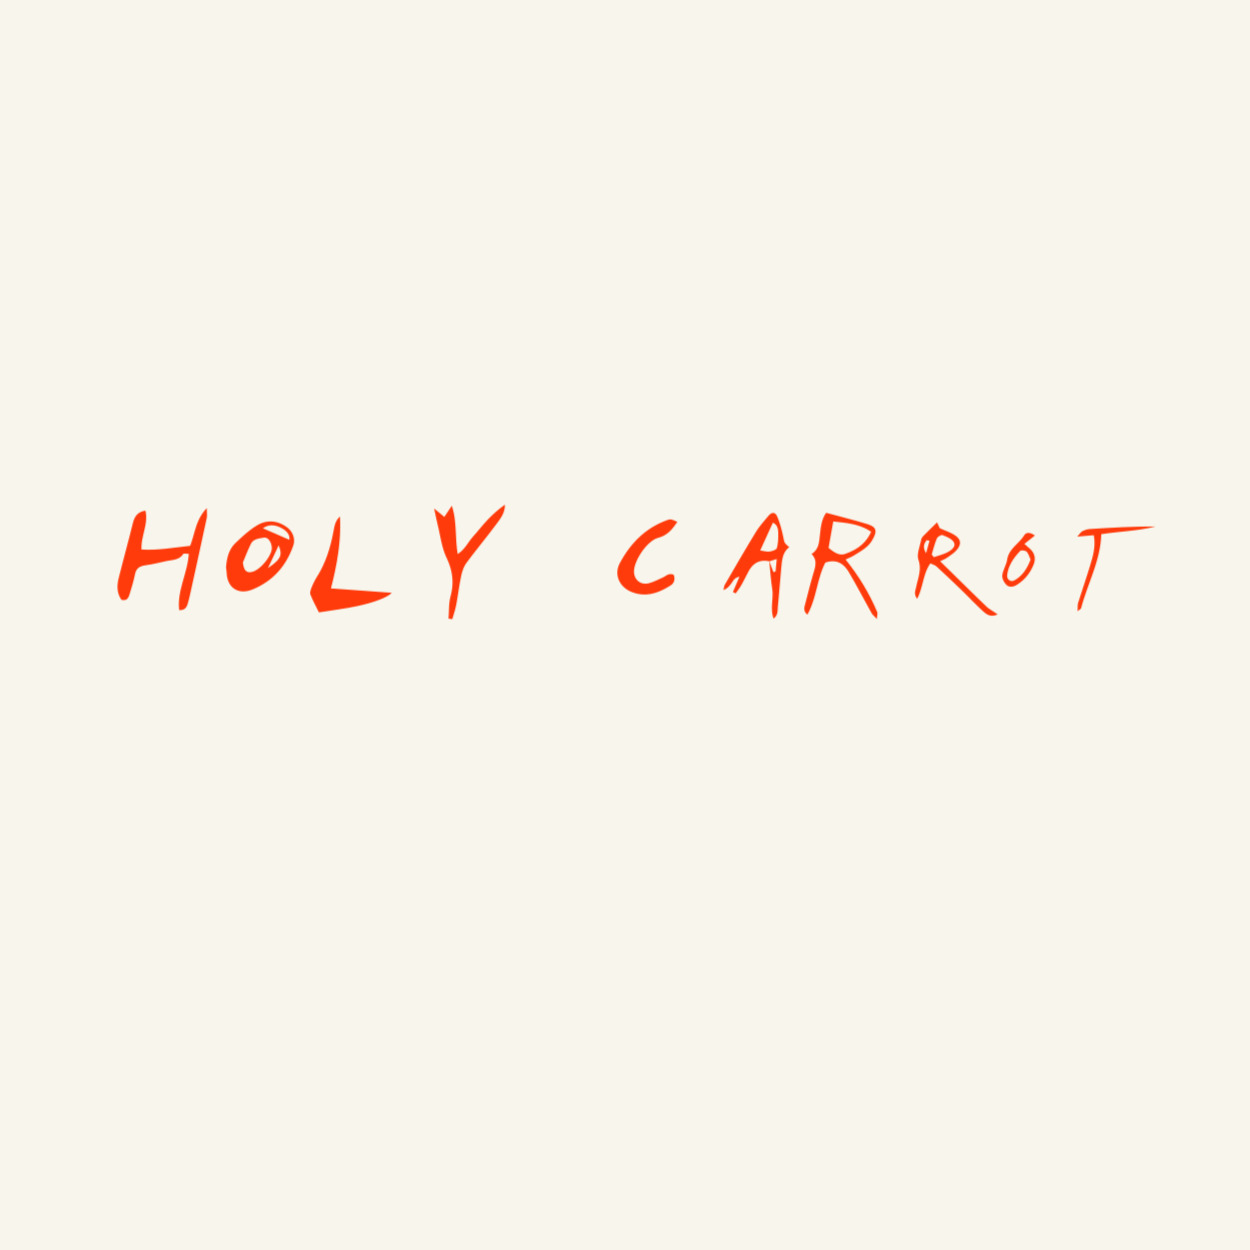 The Holy Carrot Restaurant